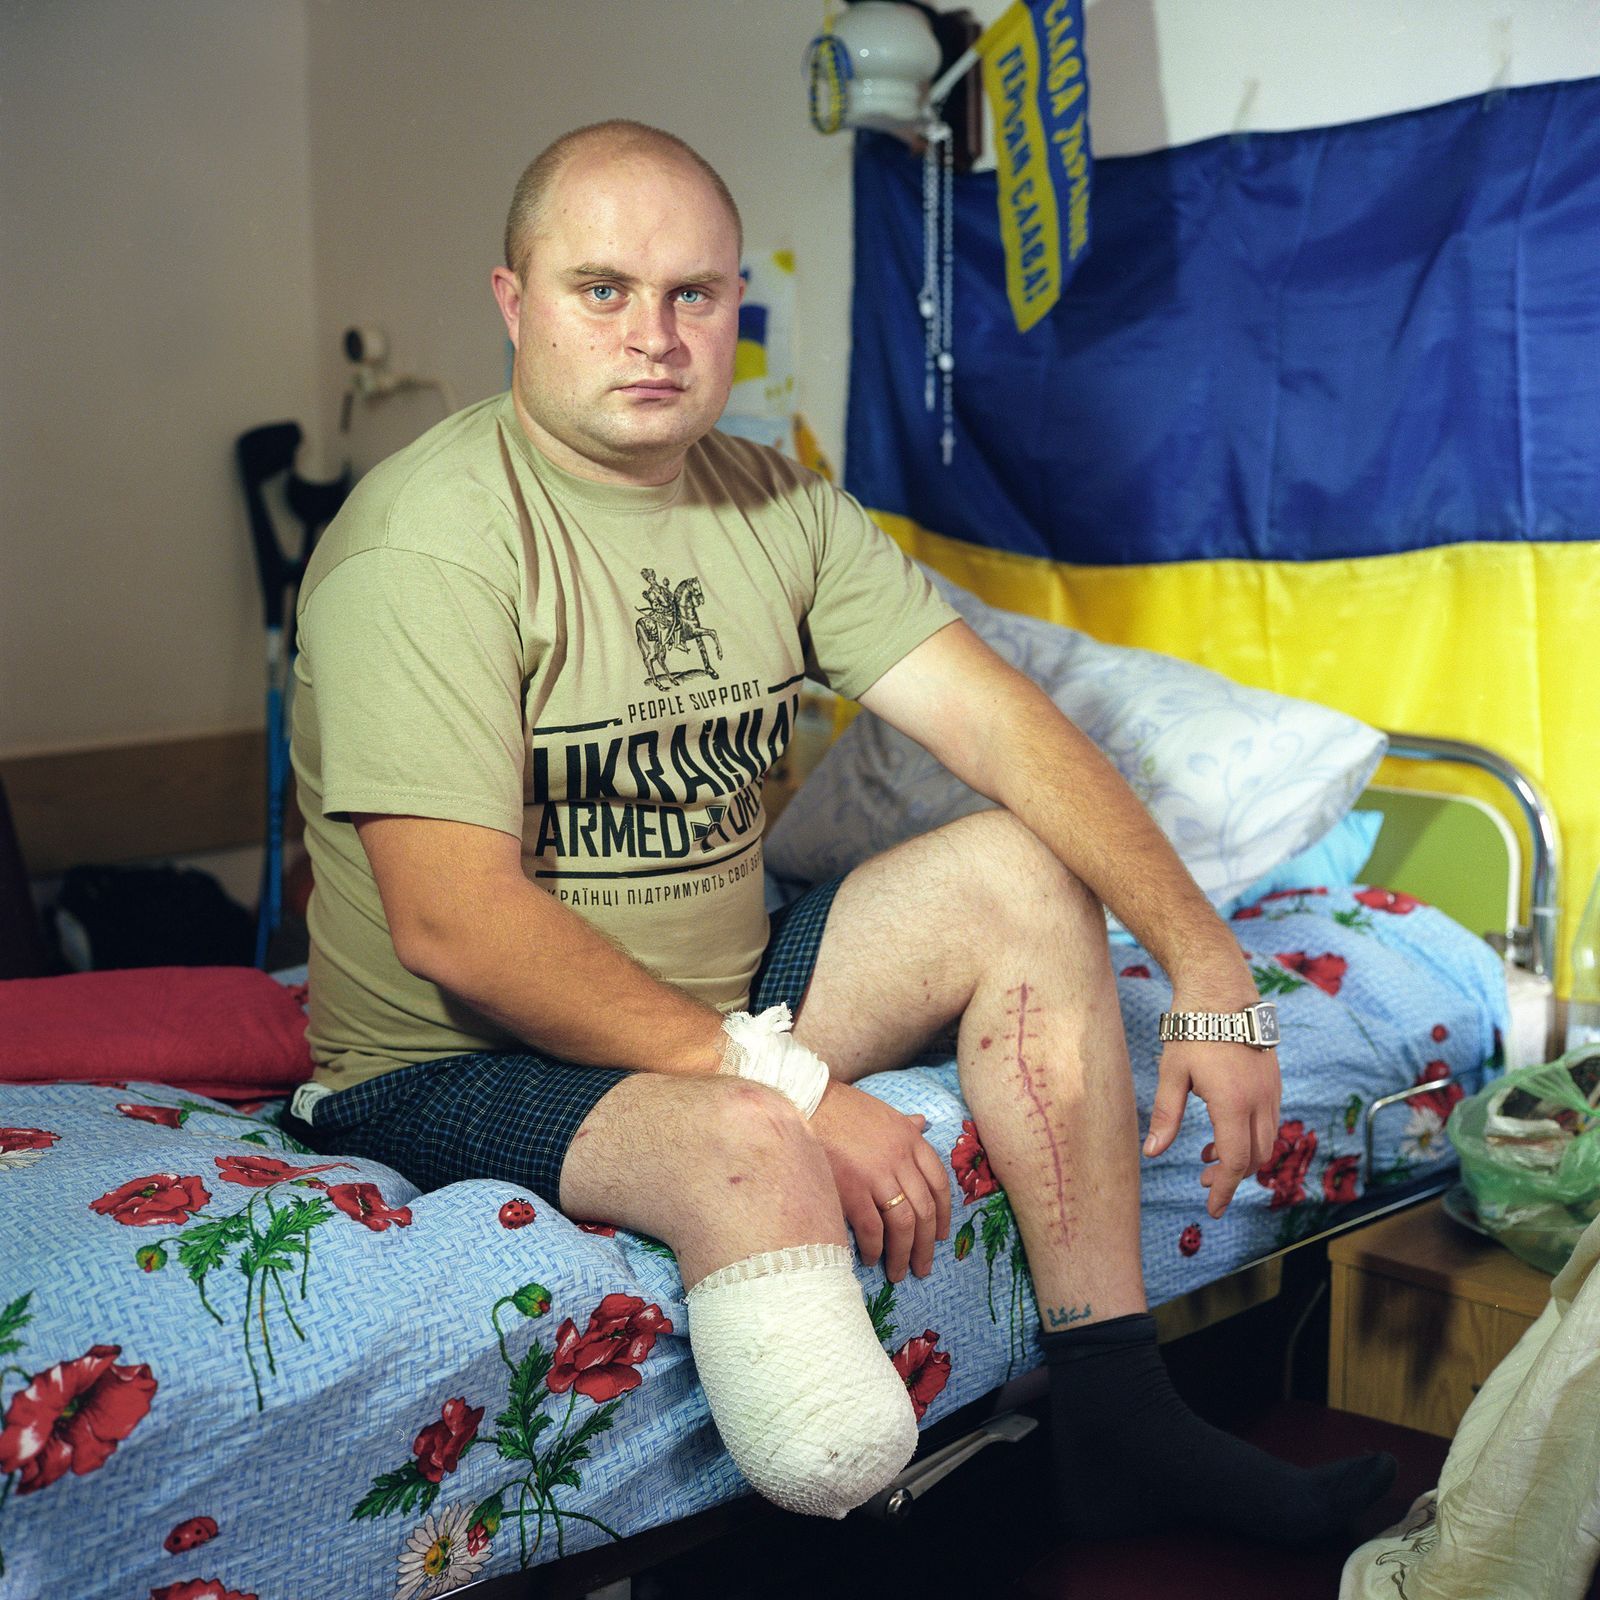 Ukrajina-zranění 11